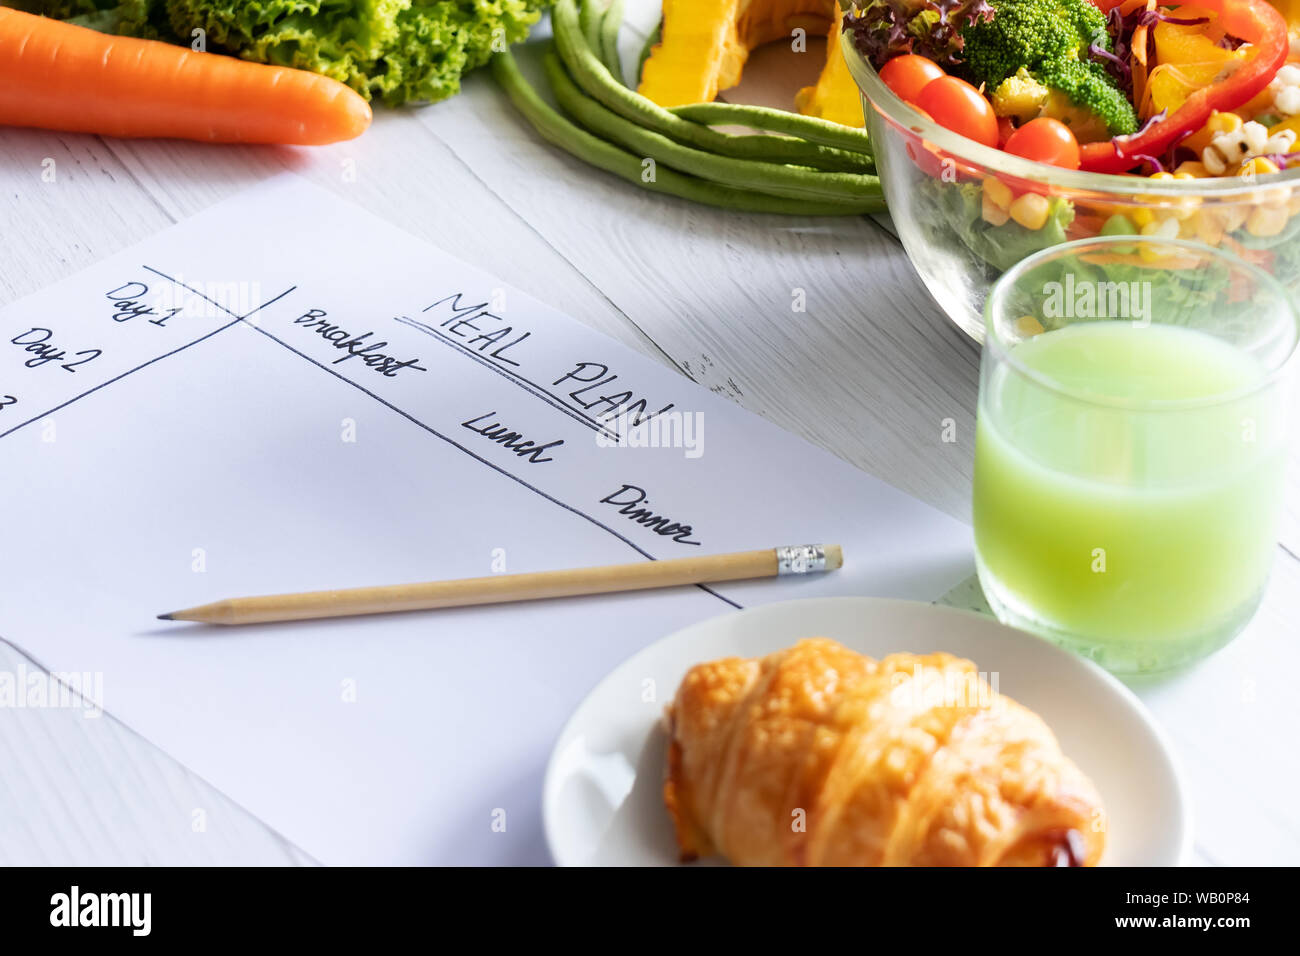 Kalorien, Speisen, Ernährung und Gewichtsabnahme Konzept. nach oben Blick auf Speisen Tabelle auf Papier mit Salat, Obst, Saft, Brot und Gemüse. Stockfoto